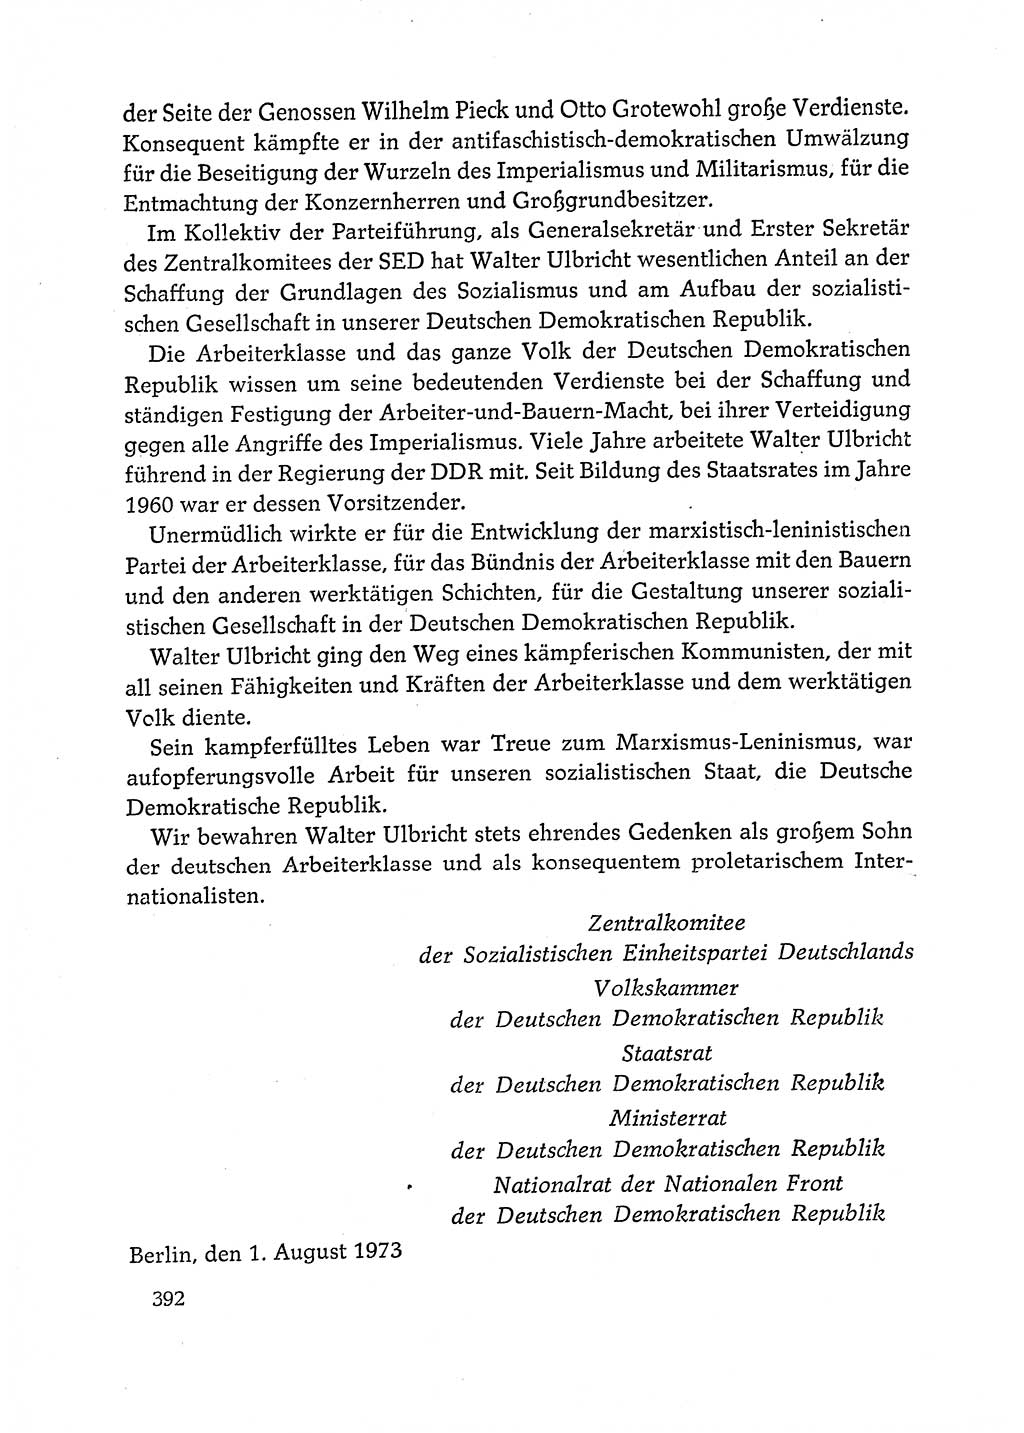 Dokumente der Sozialistischen Einheitspartei Deutschlands (SED) [Deutsche Demokratische Republik (DDR)] 1972-1973, Seite 392 (Dok. SED DDR 1972-1973, S. 392)